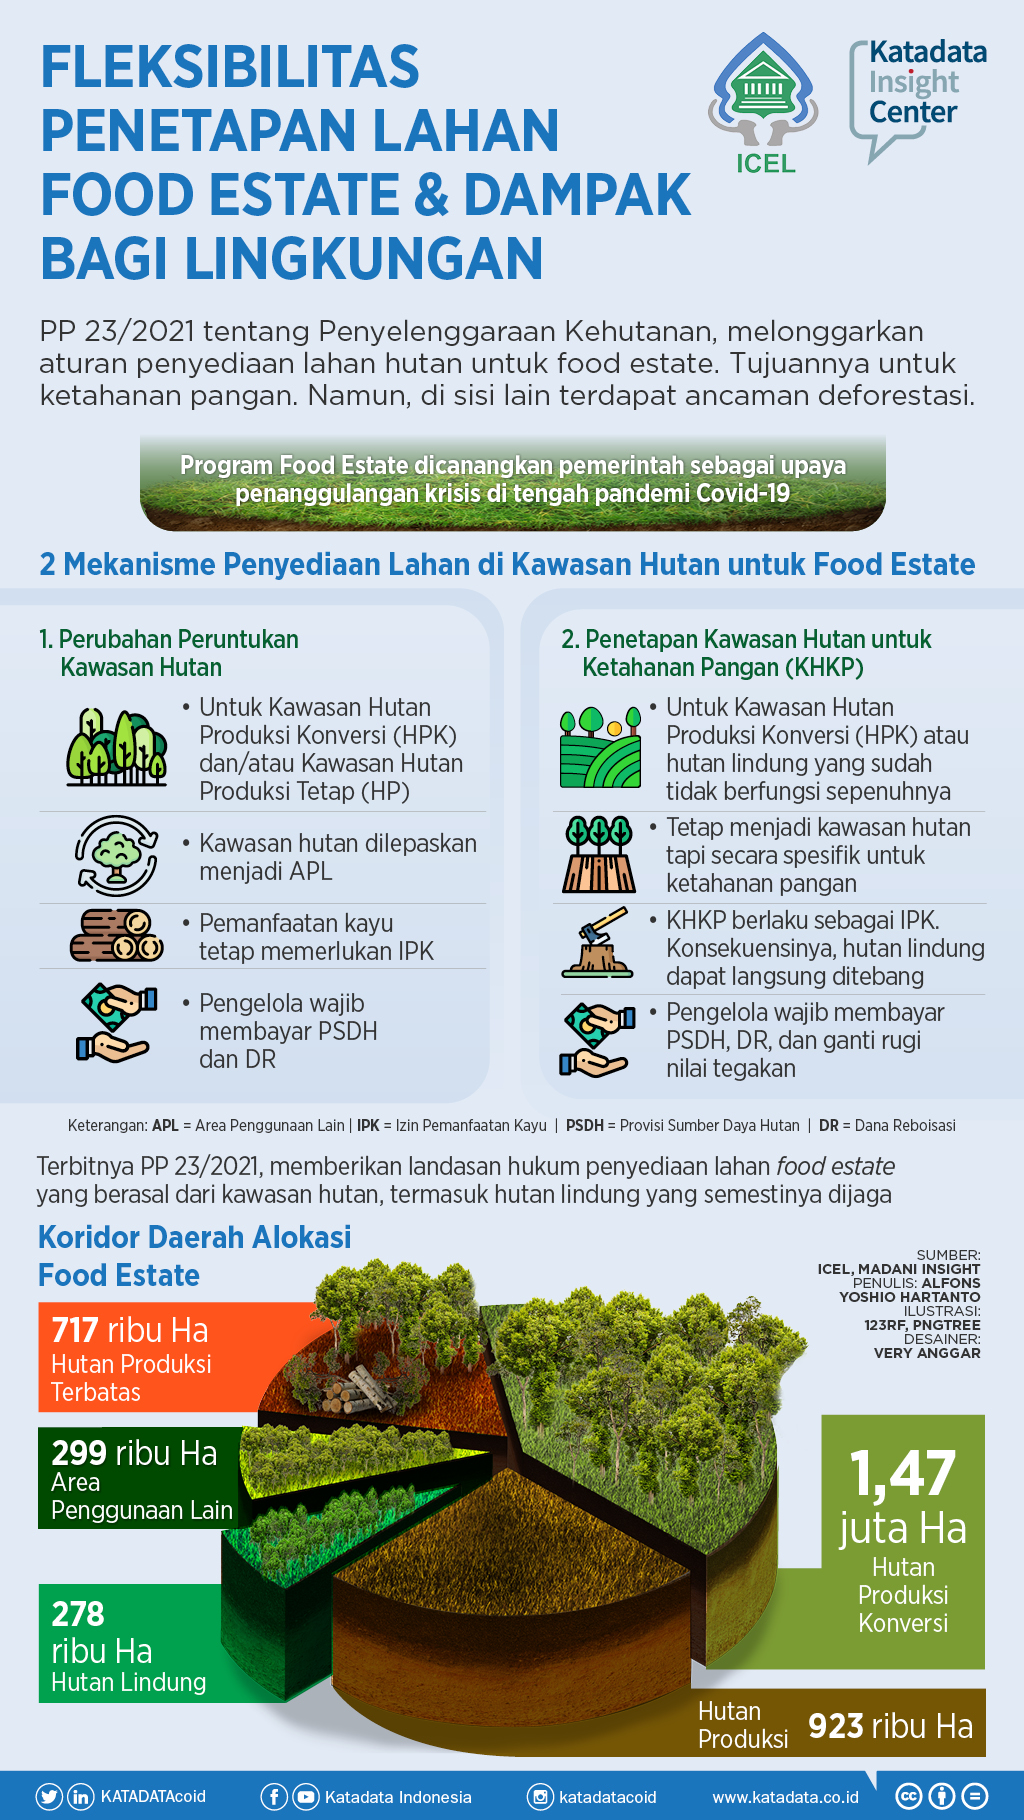 Fleksibilitas Penetapan Lahan Food Estate & Dampak Bagi Lingkungan